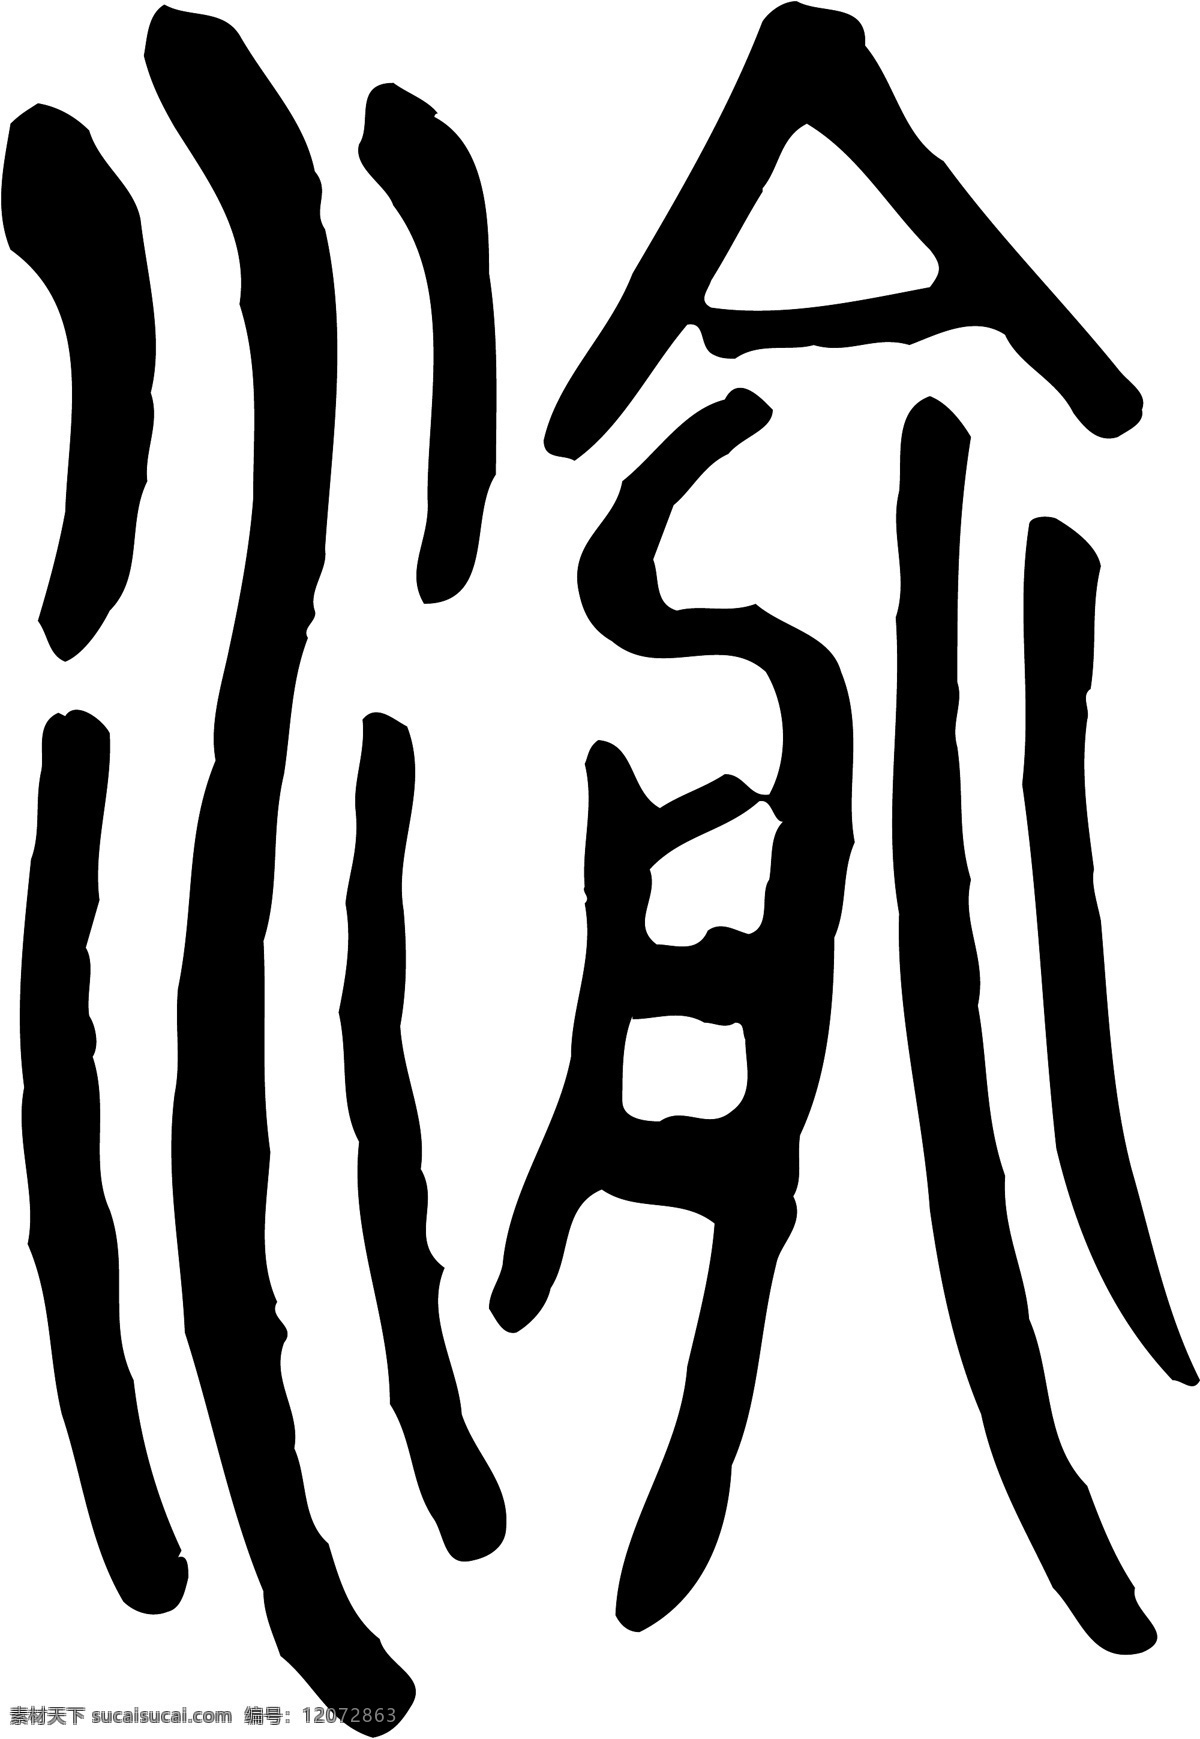 渝 书法 汉字 十二画 传统艺术 矢量 格式 1987 ai格式 设计素材 十二画字 瀚墨宝典 矢量图库 白色